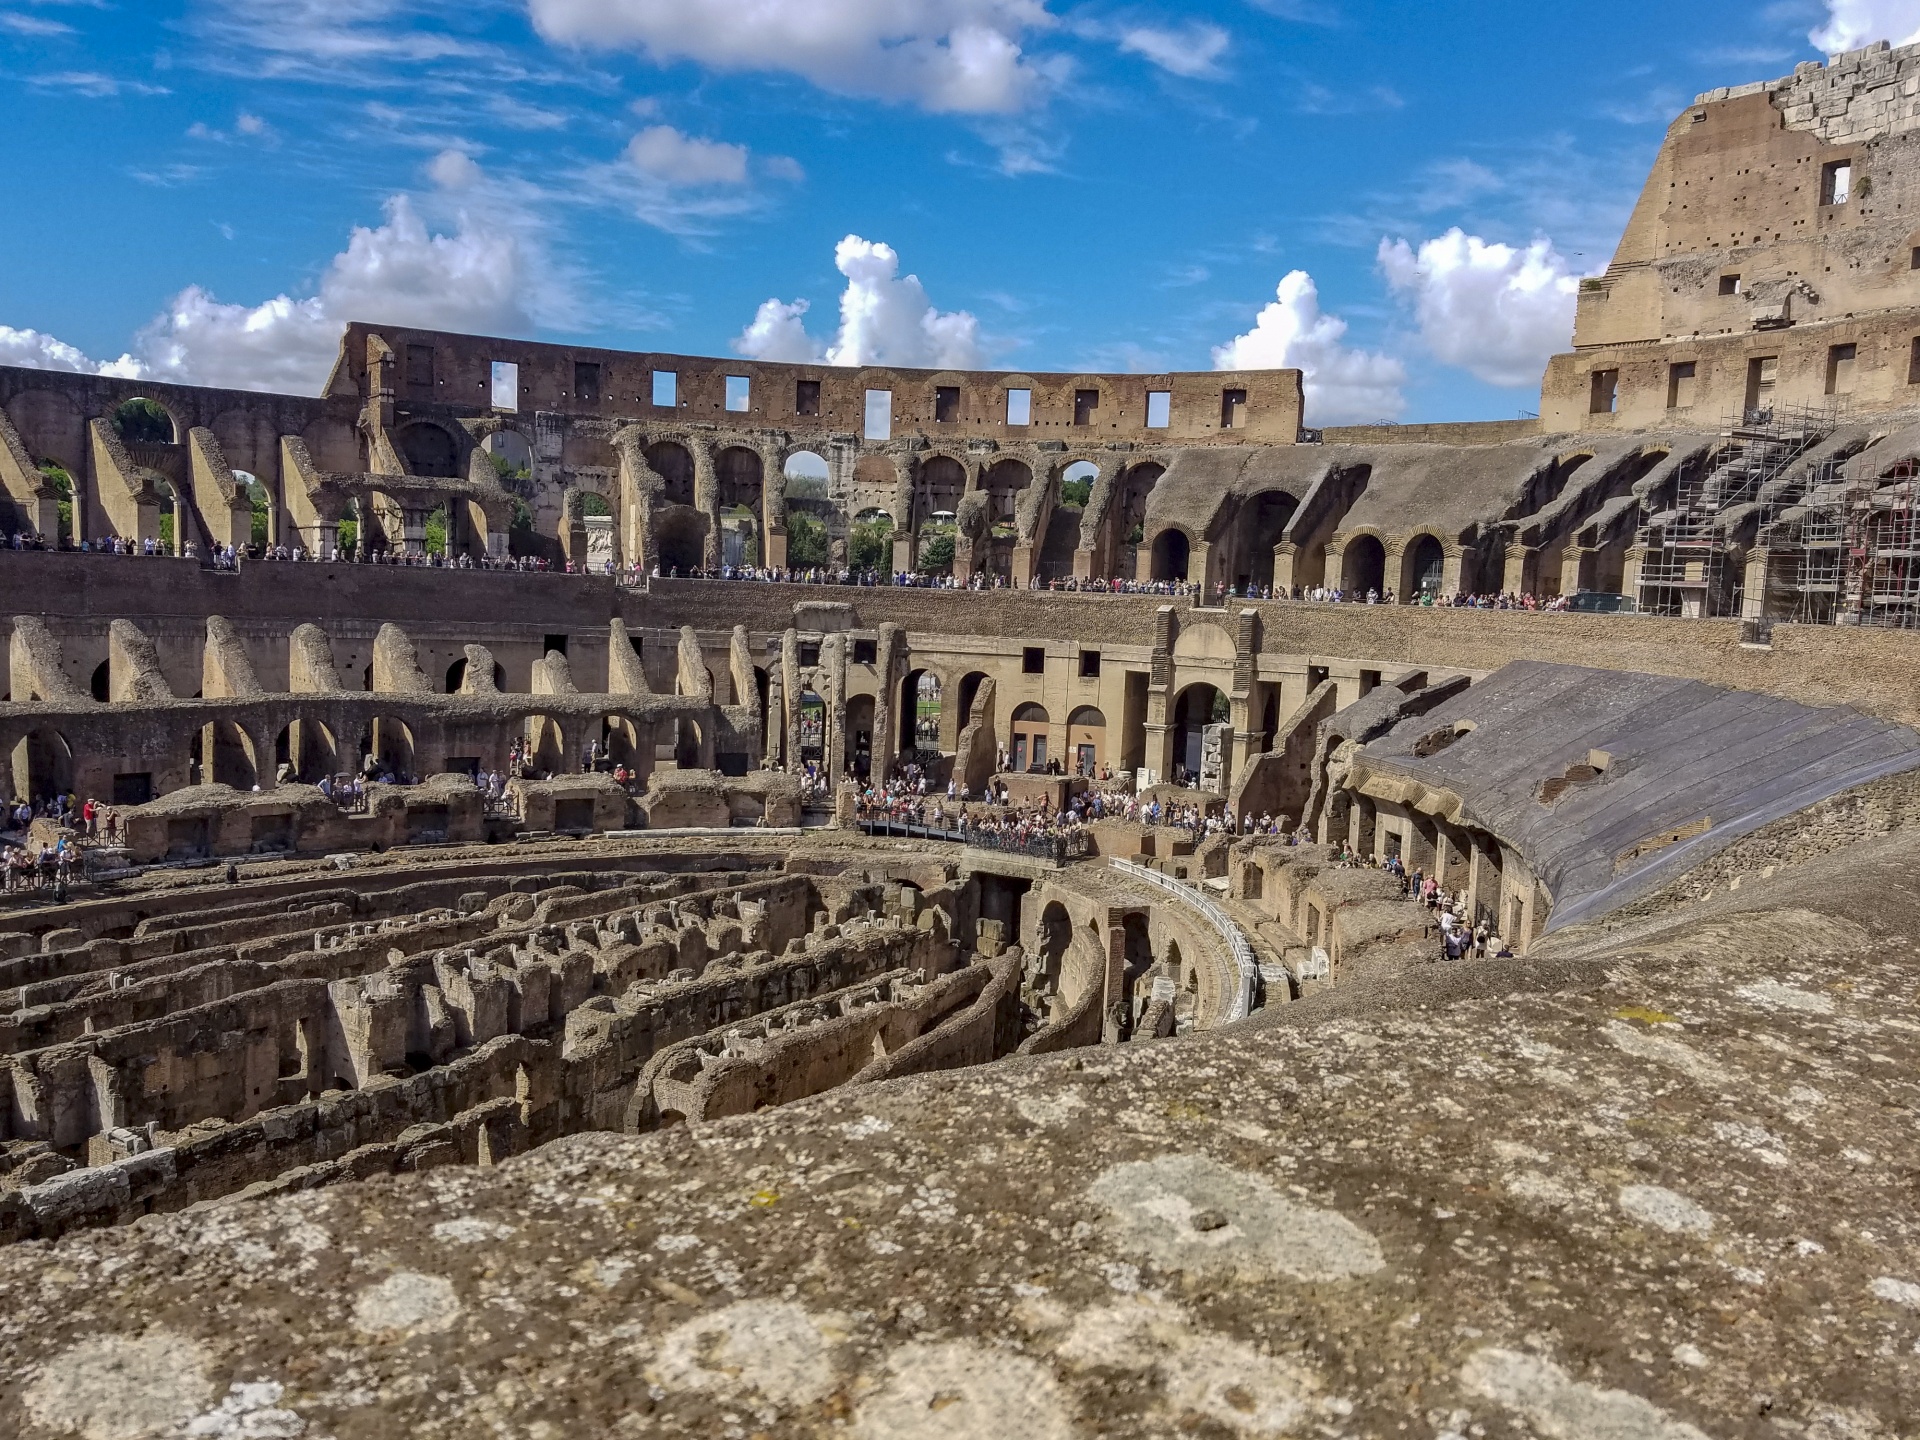 Inside Rome Coliseum